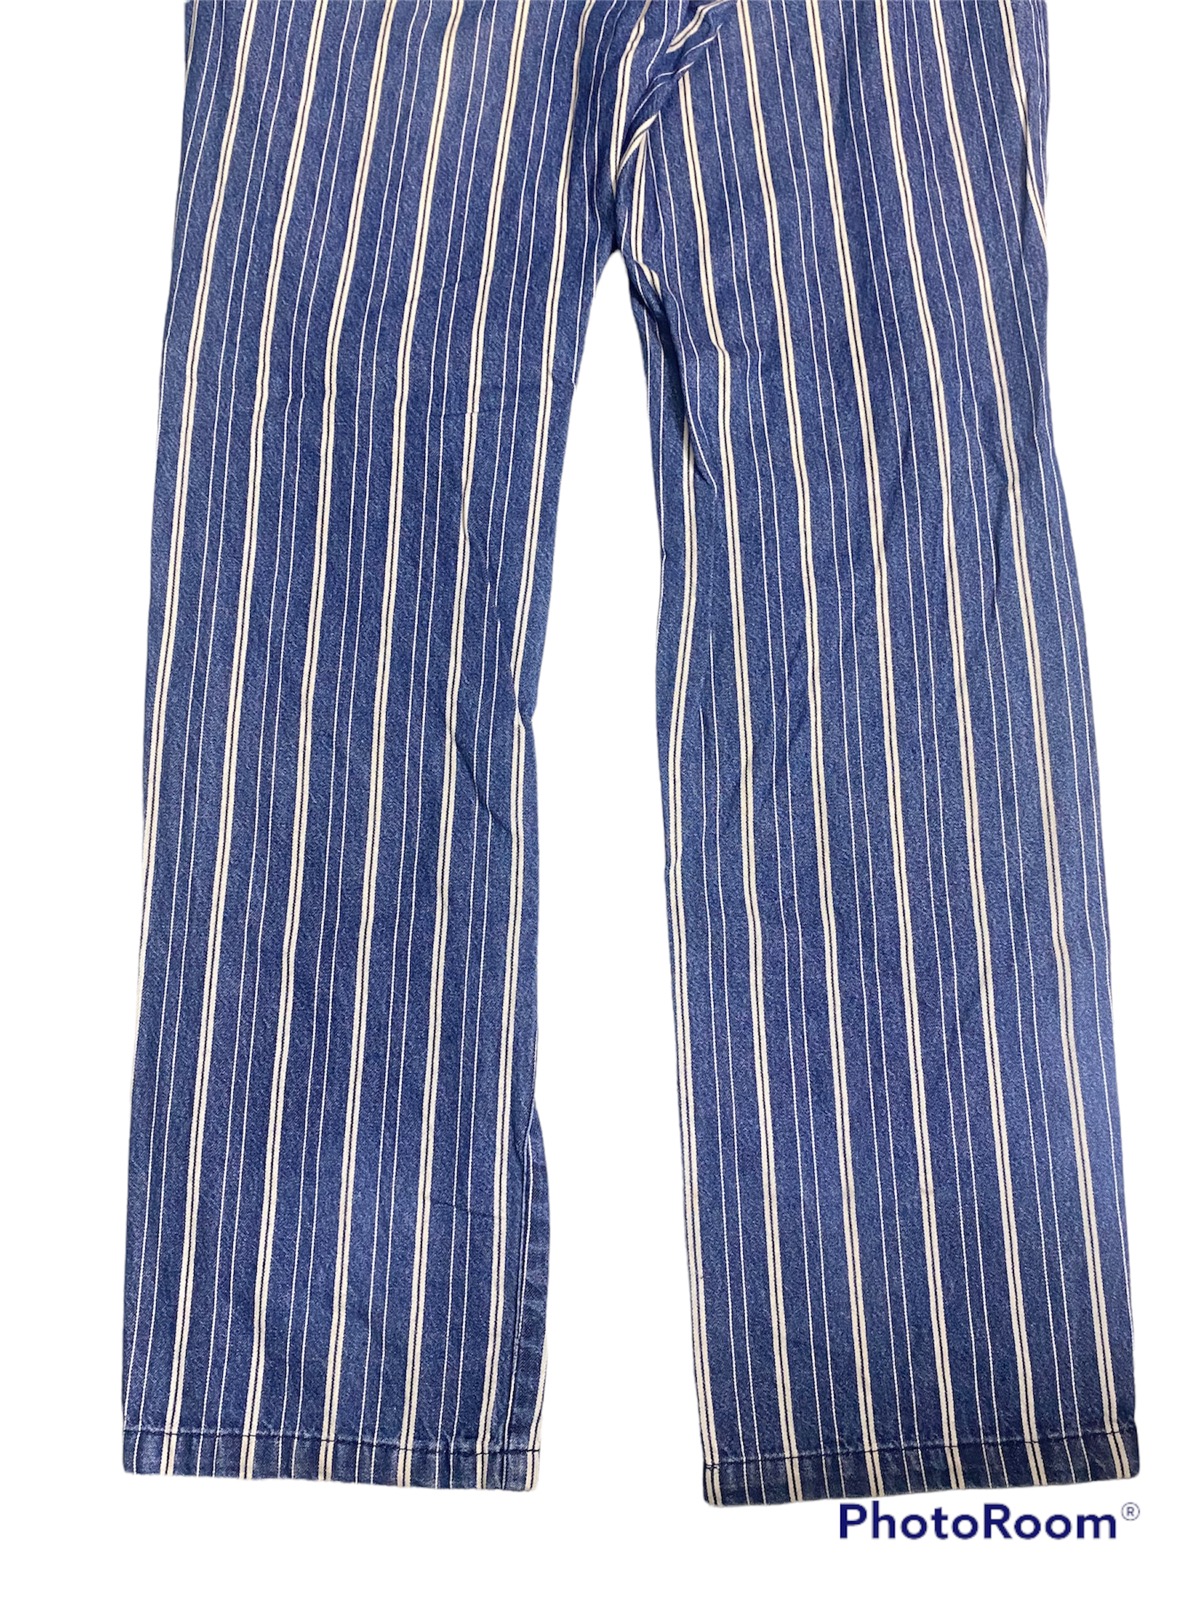 Japanese Brand - Japanese Brand PPFM Blue Stripe Denim Pants